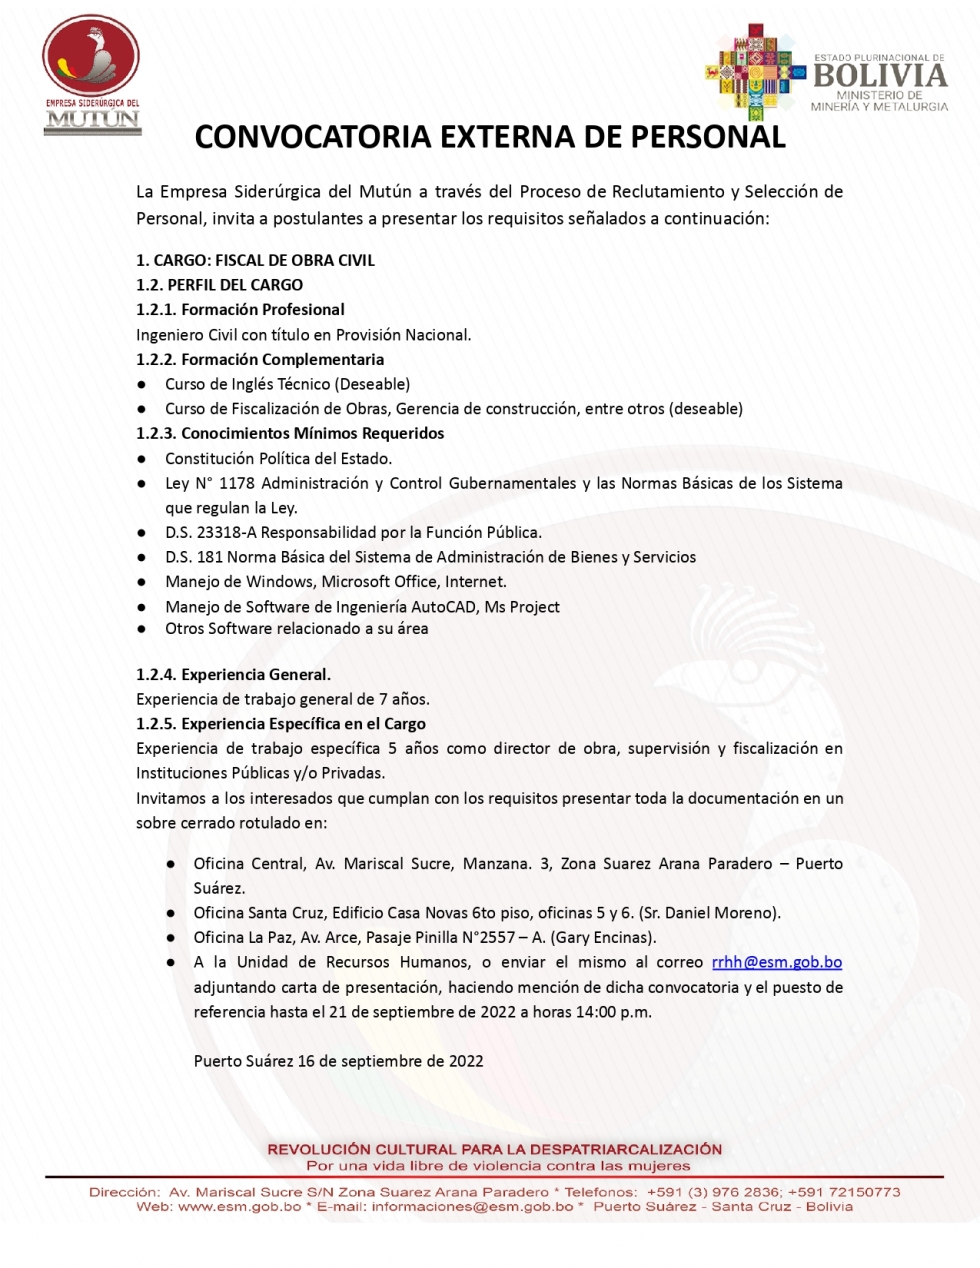 CONVOCATORIA PARA FISCAL DE OBRA CIVIL  - Empresa Siderúrgica del Mutún